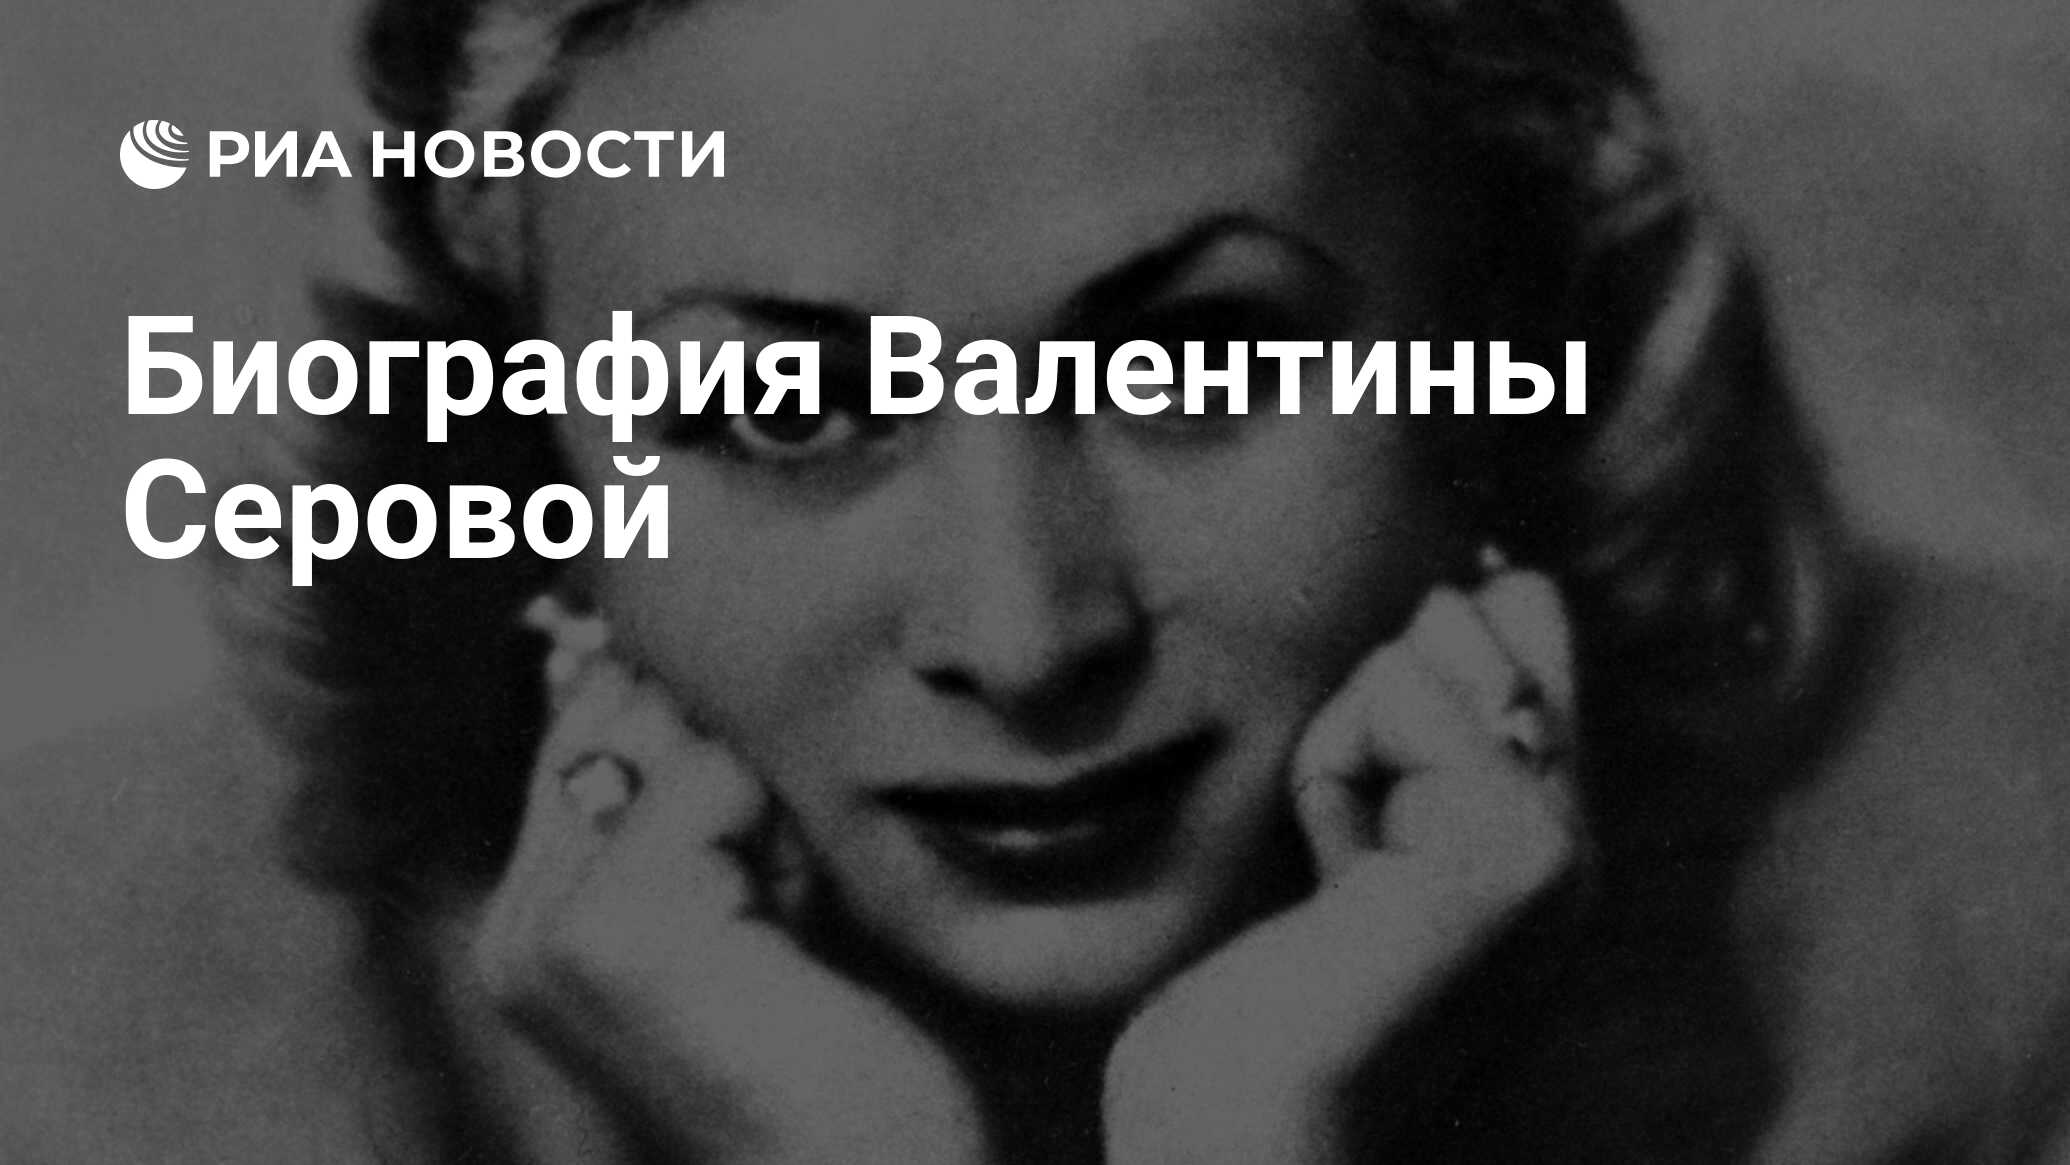 Биография Валентины Серовой - РИА Новости, 23.12.2012